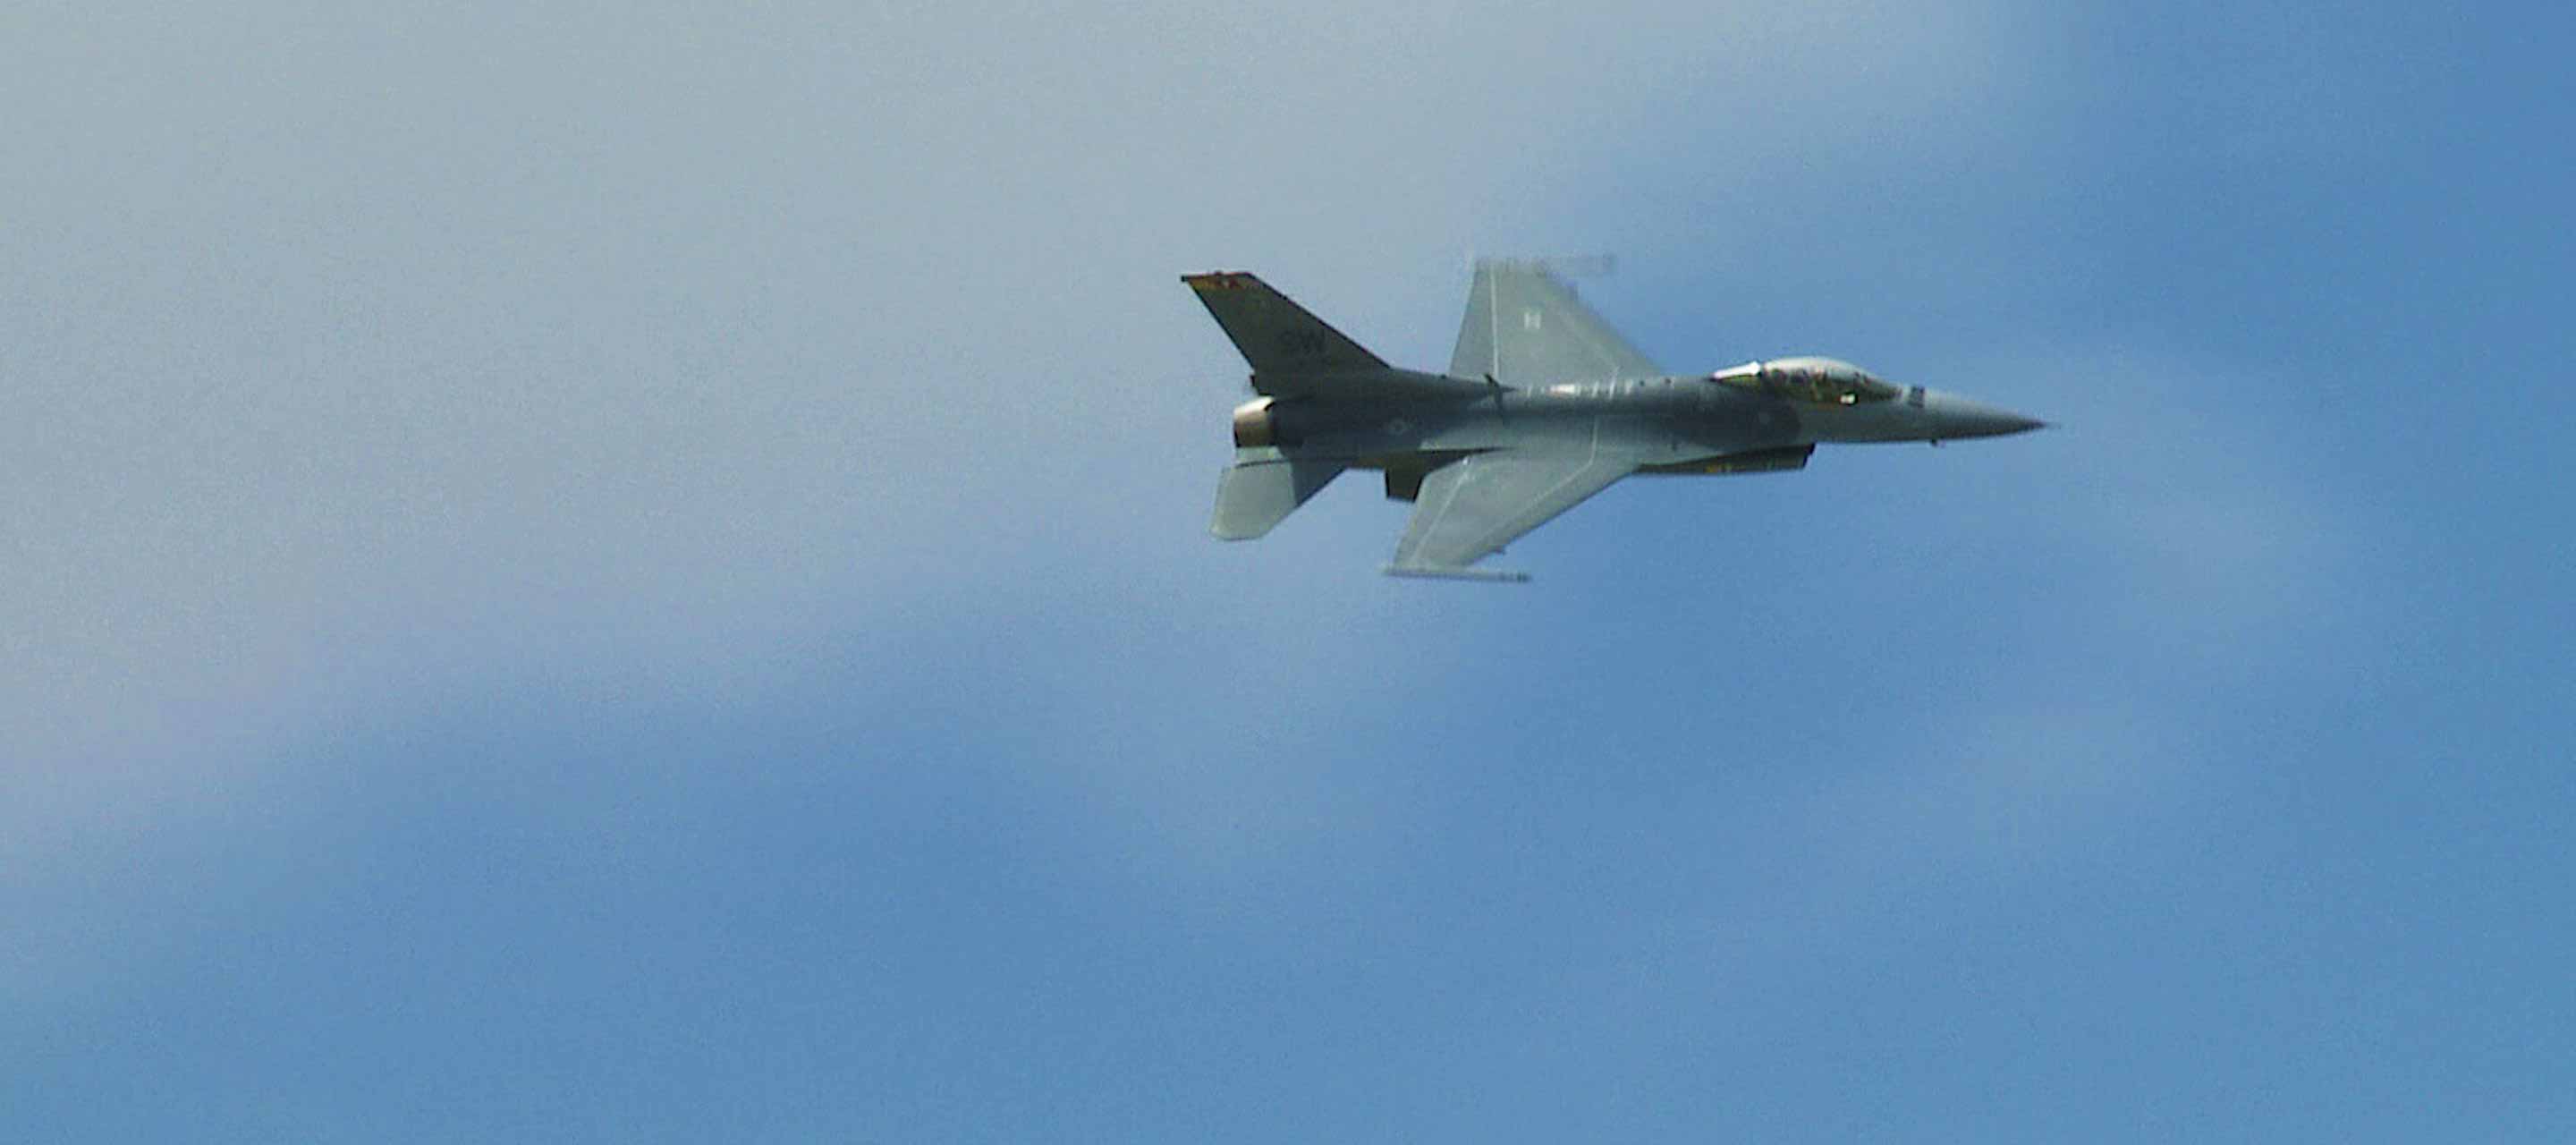 Fighter jet in the sky